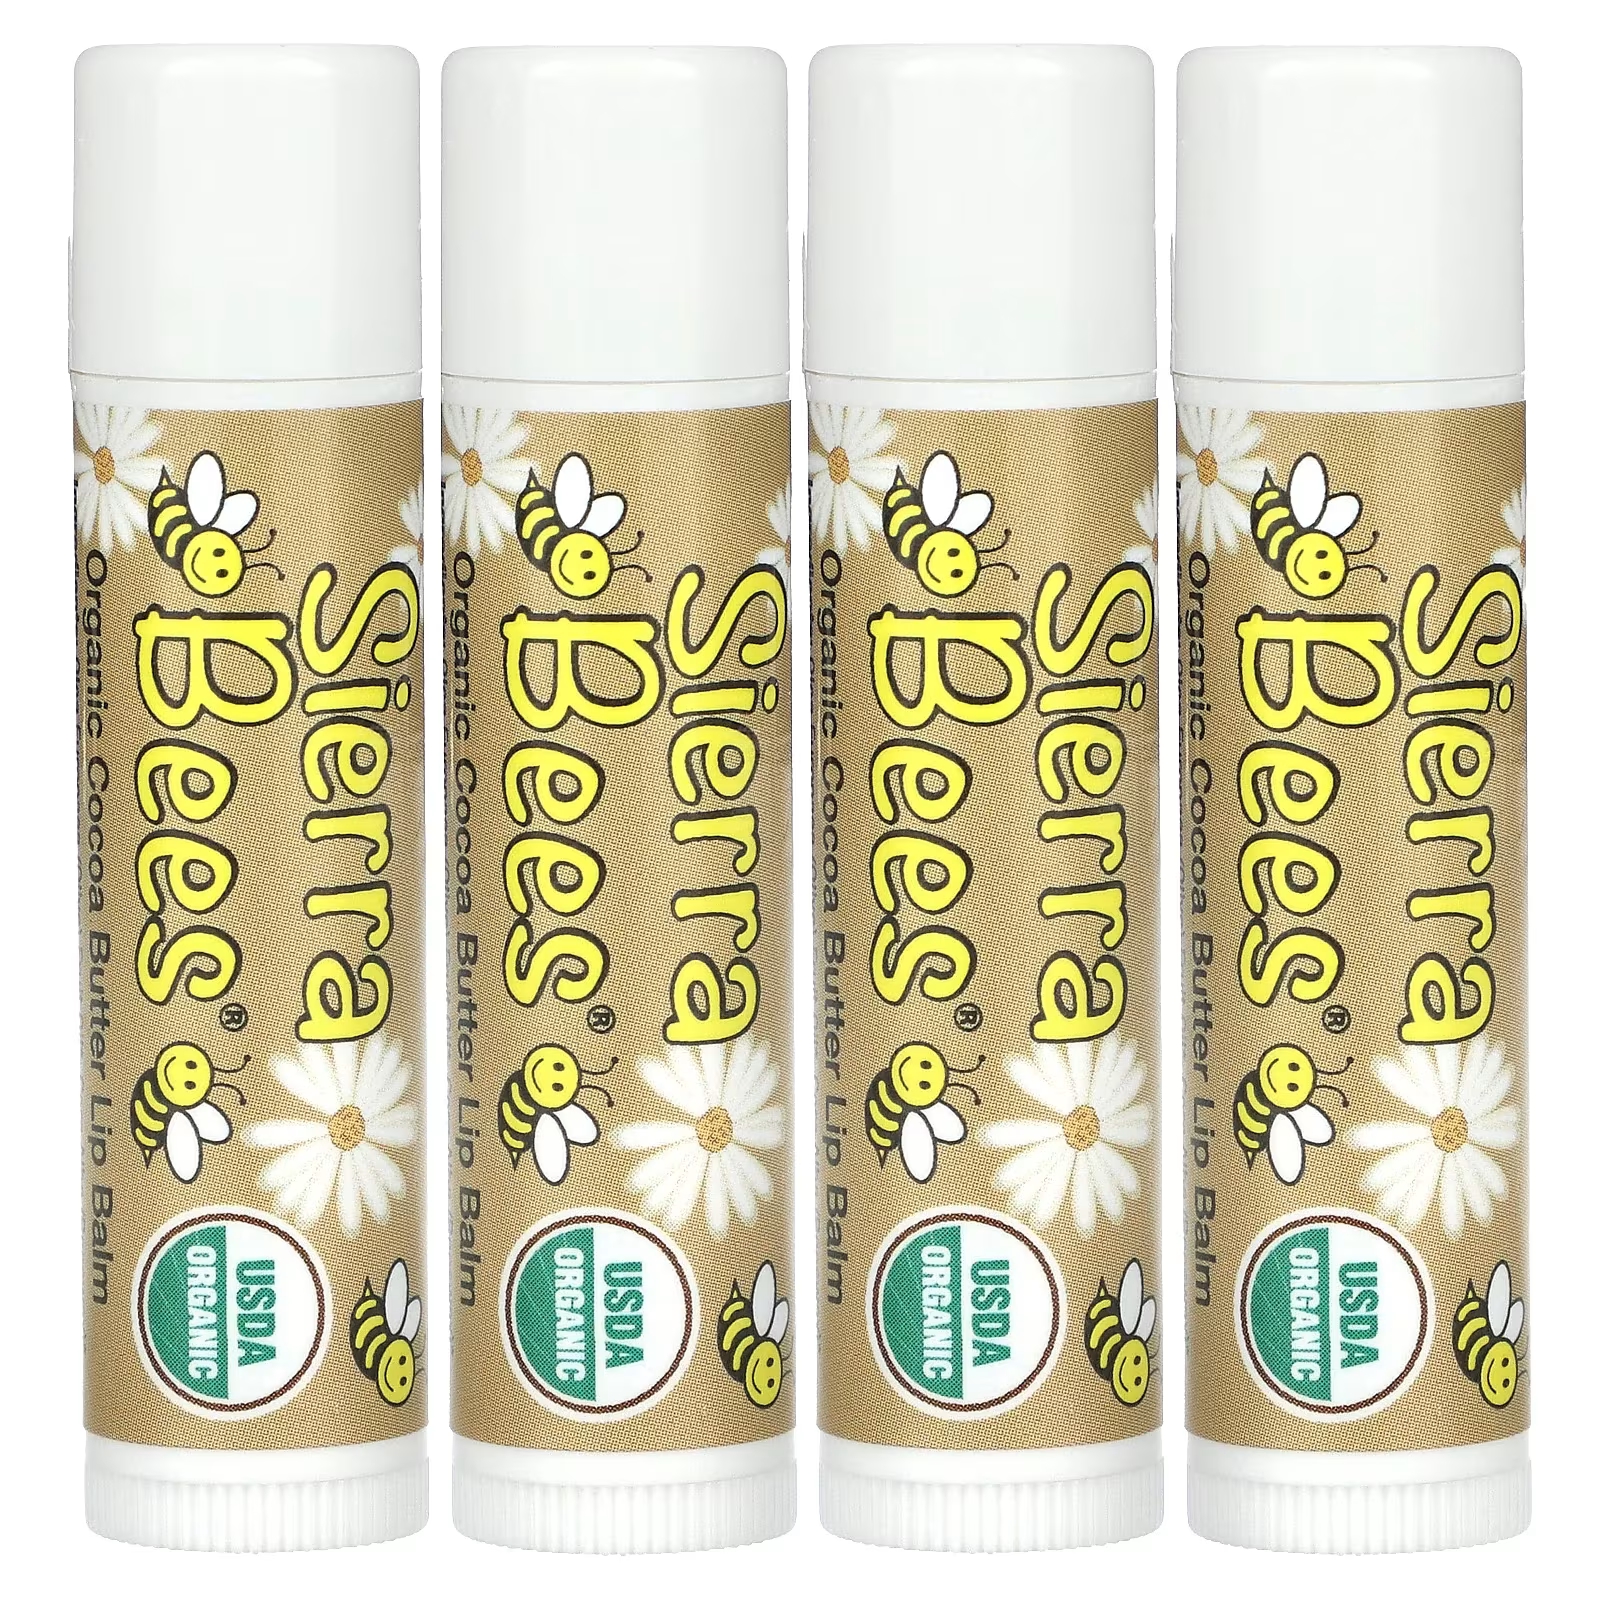 Органические бальзамы для губ Sierra Bees с маслом какао, 4 упаковки по 4,25 г sierra bees органические бальзамы для губ гранат 4 штуки по 4 25 г 0 15 унции